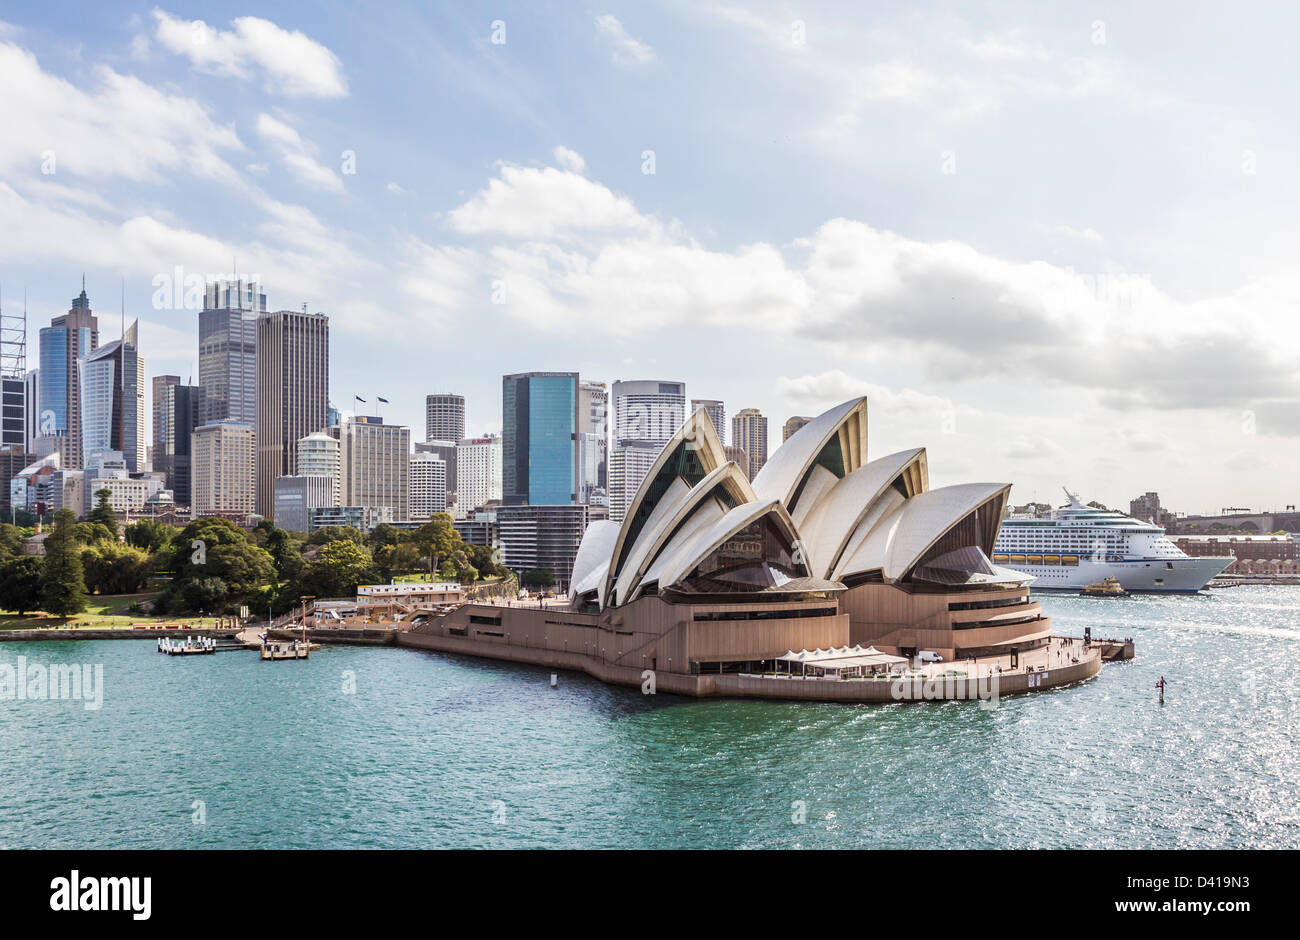 La Opera House di Sydney con la nave da crociera Voyager dei mari in background. Foto Stock